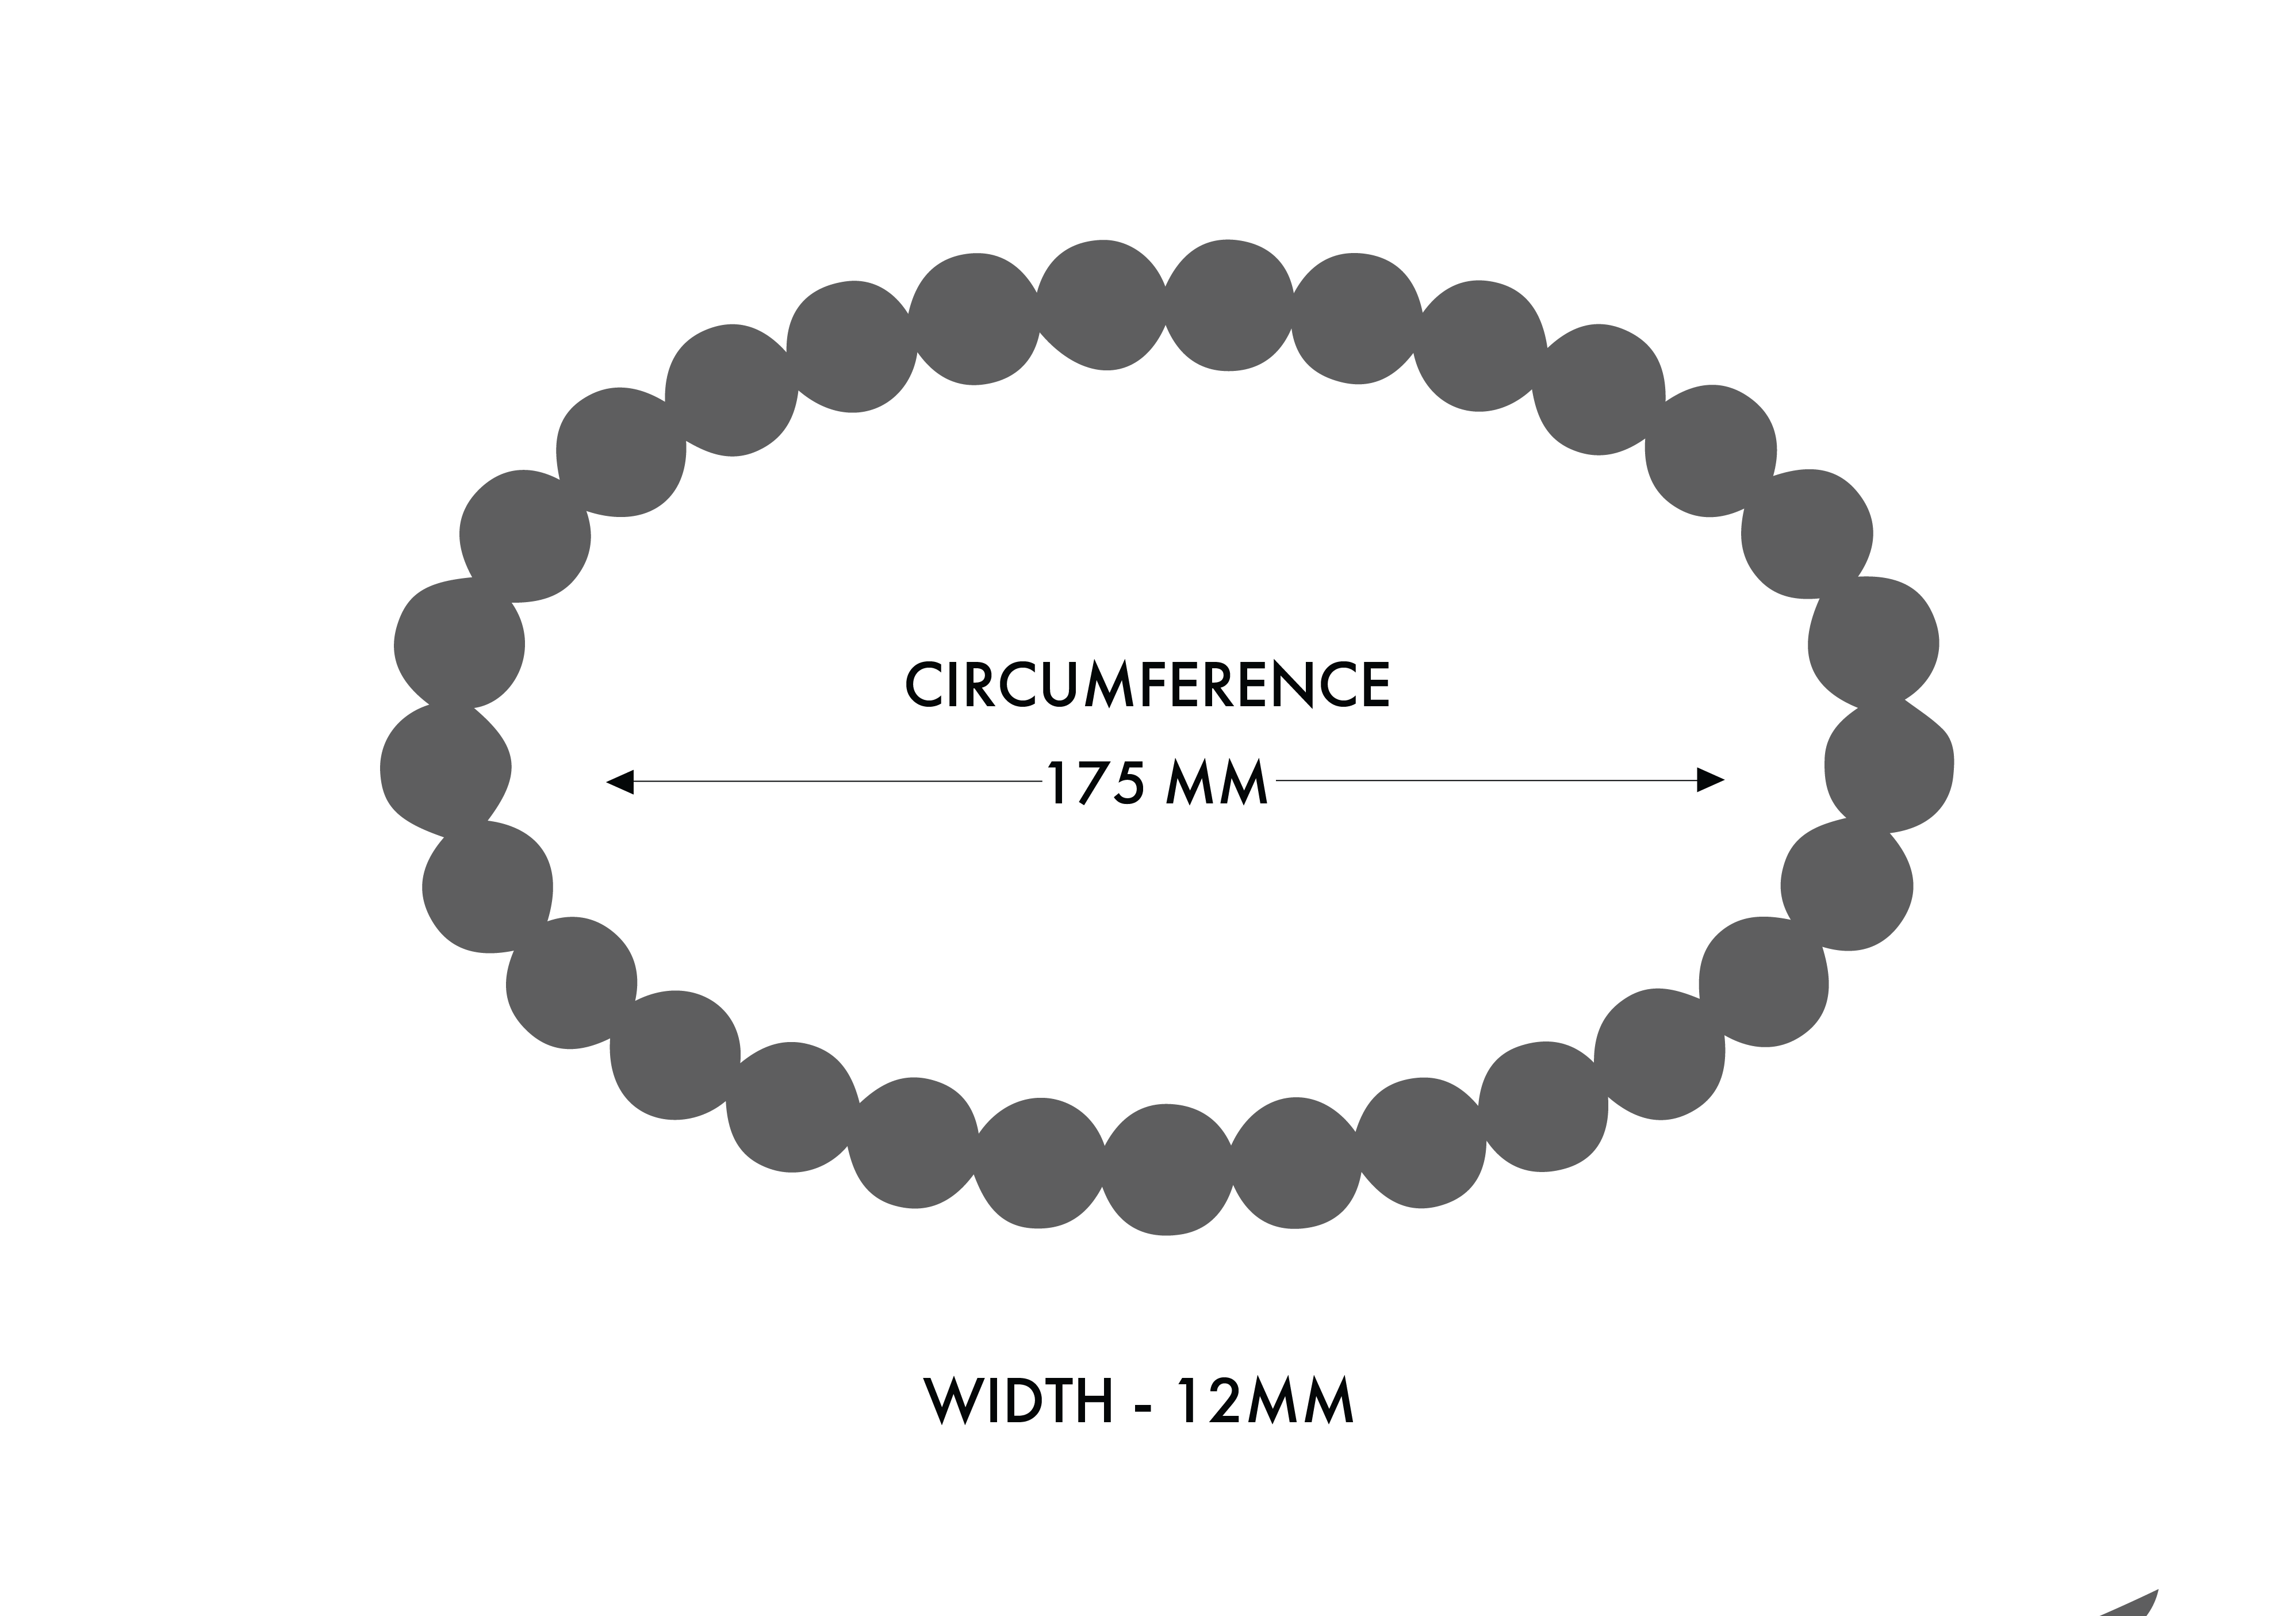 Oval Stone Bracelet